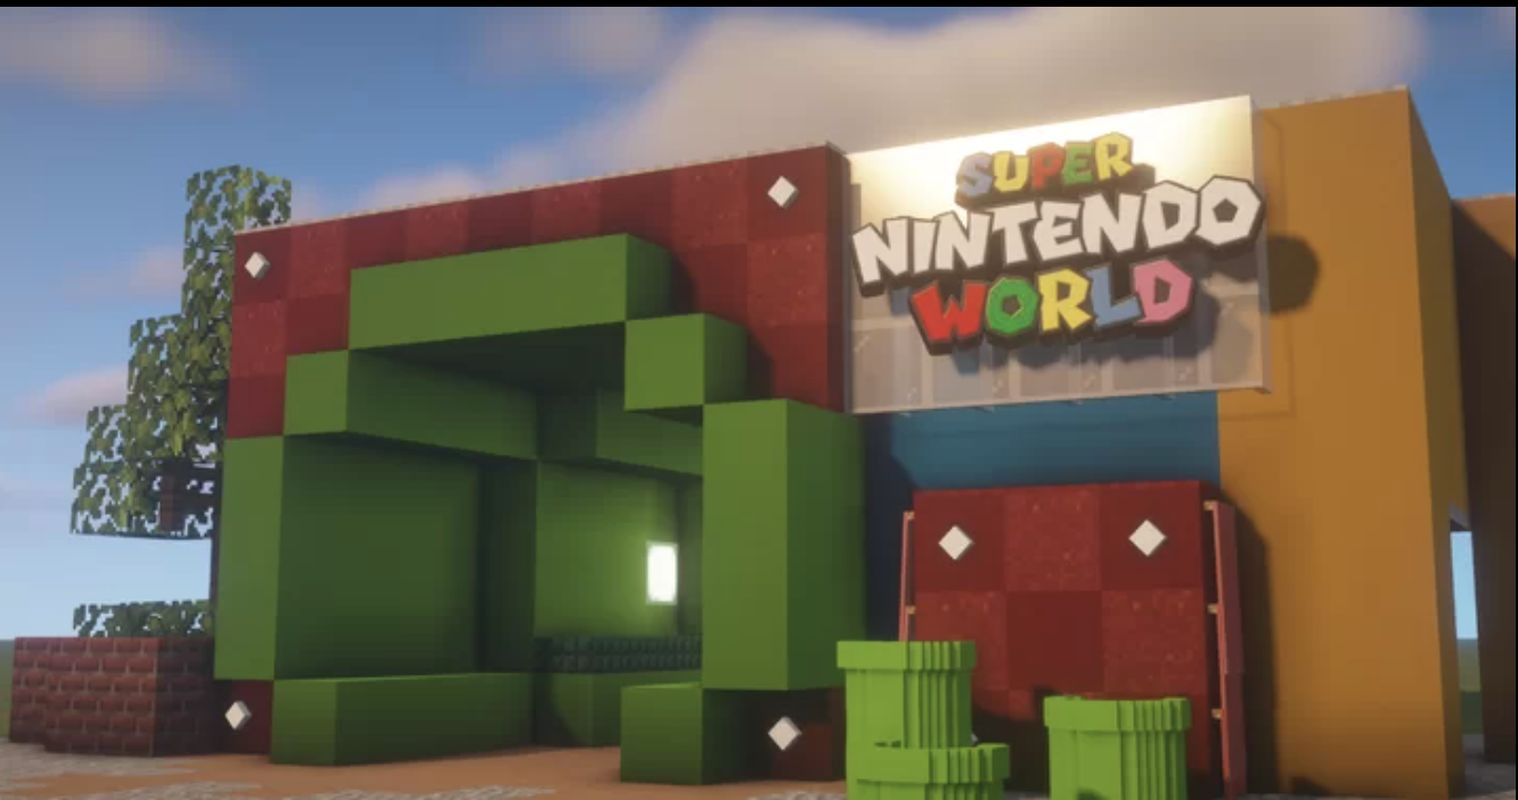 Bilder zu Besucht die Super Nintendo World in Minecraft!